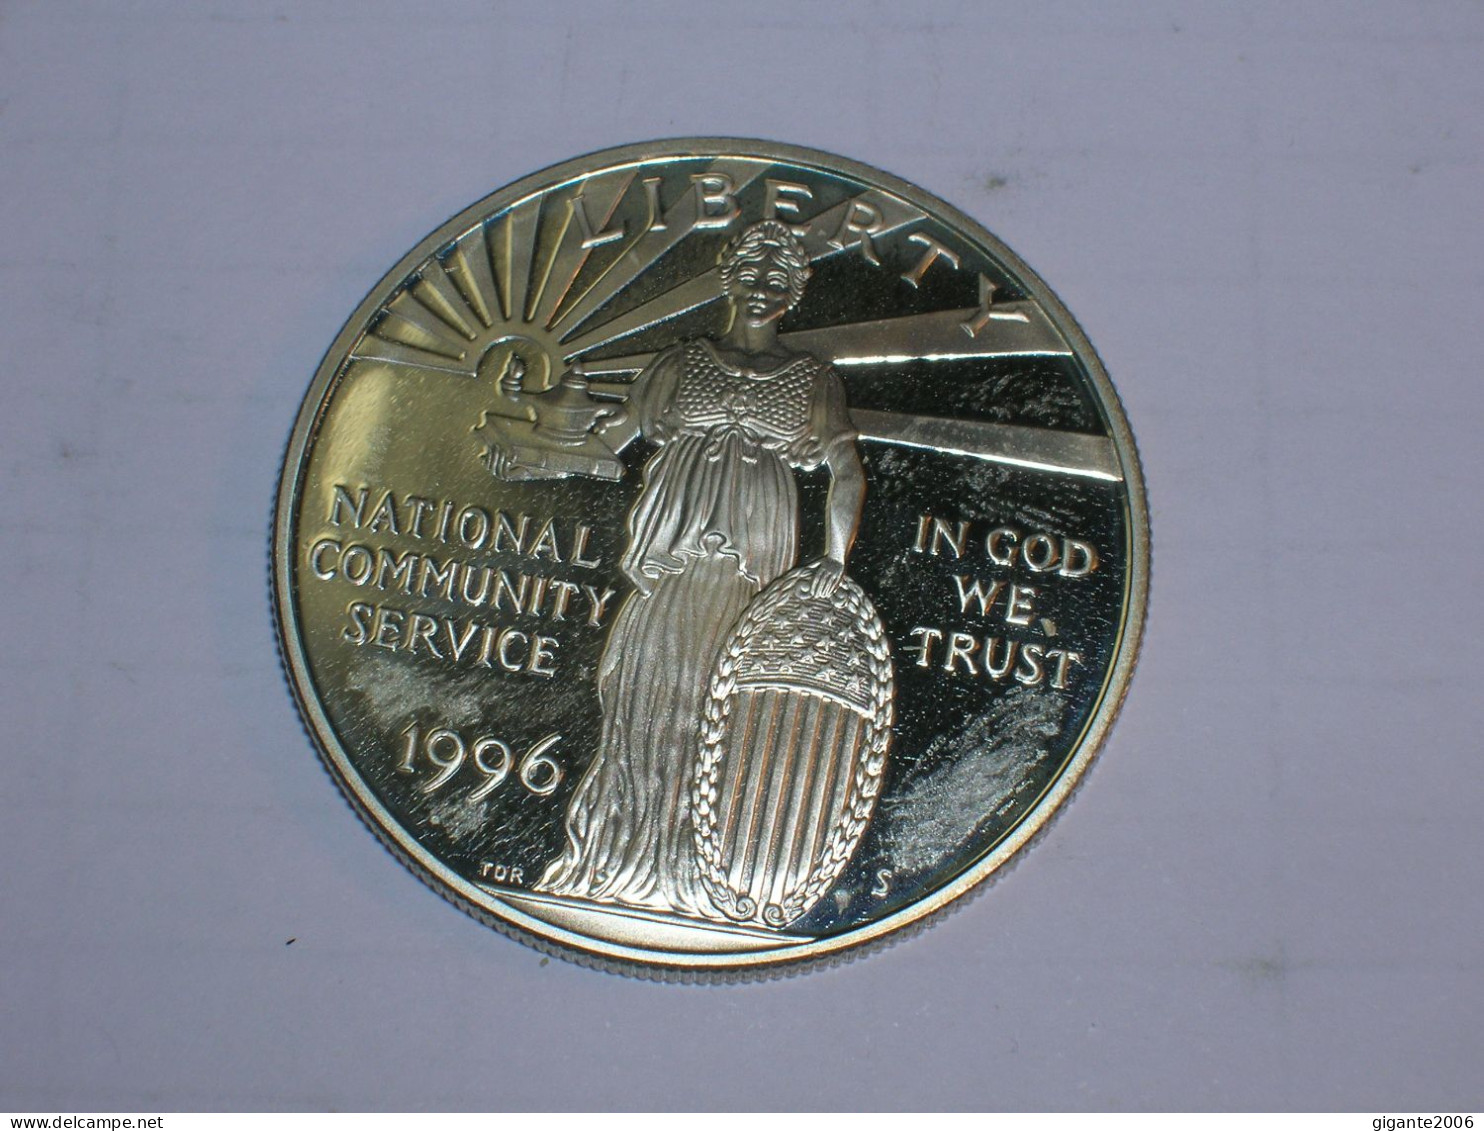 Estados Unidos/USA 1 Dolar Conmemorativo, 1996 S, Proof, National Community Service (13960) - Conmemorativas